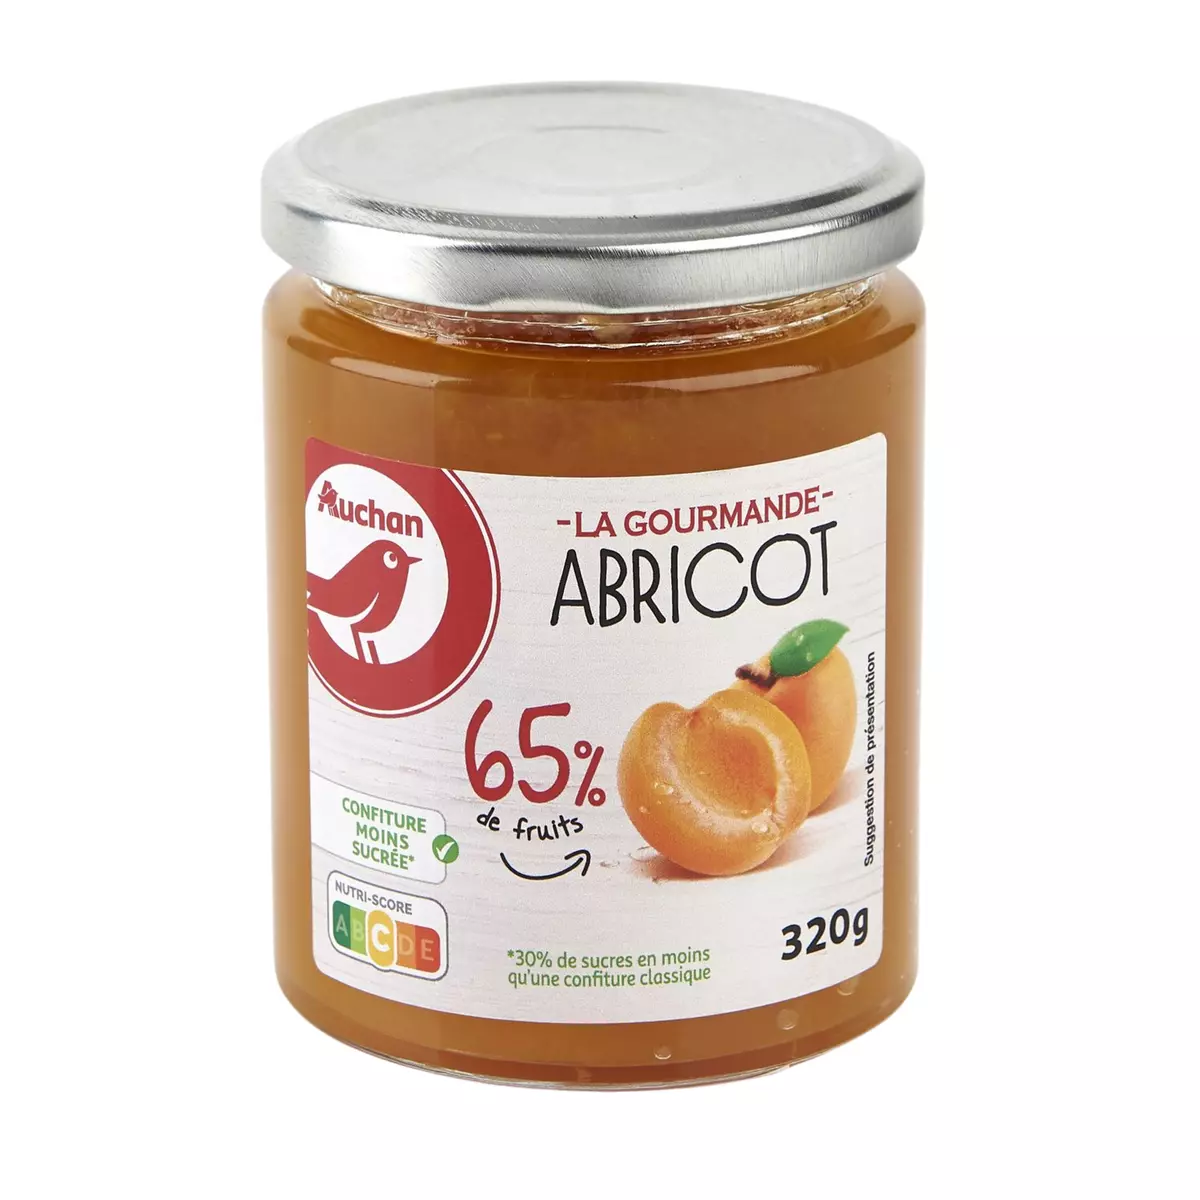 AUCHAN La gourmande confiture à l'abricot 65% de fruits 320g